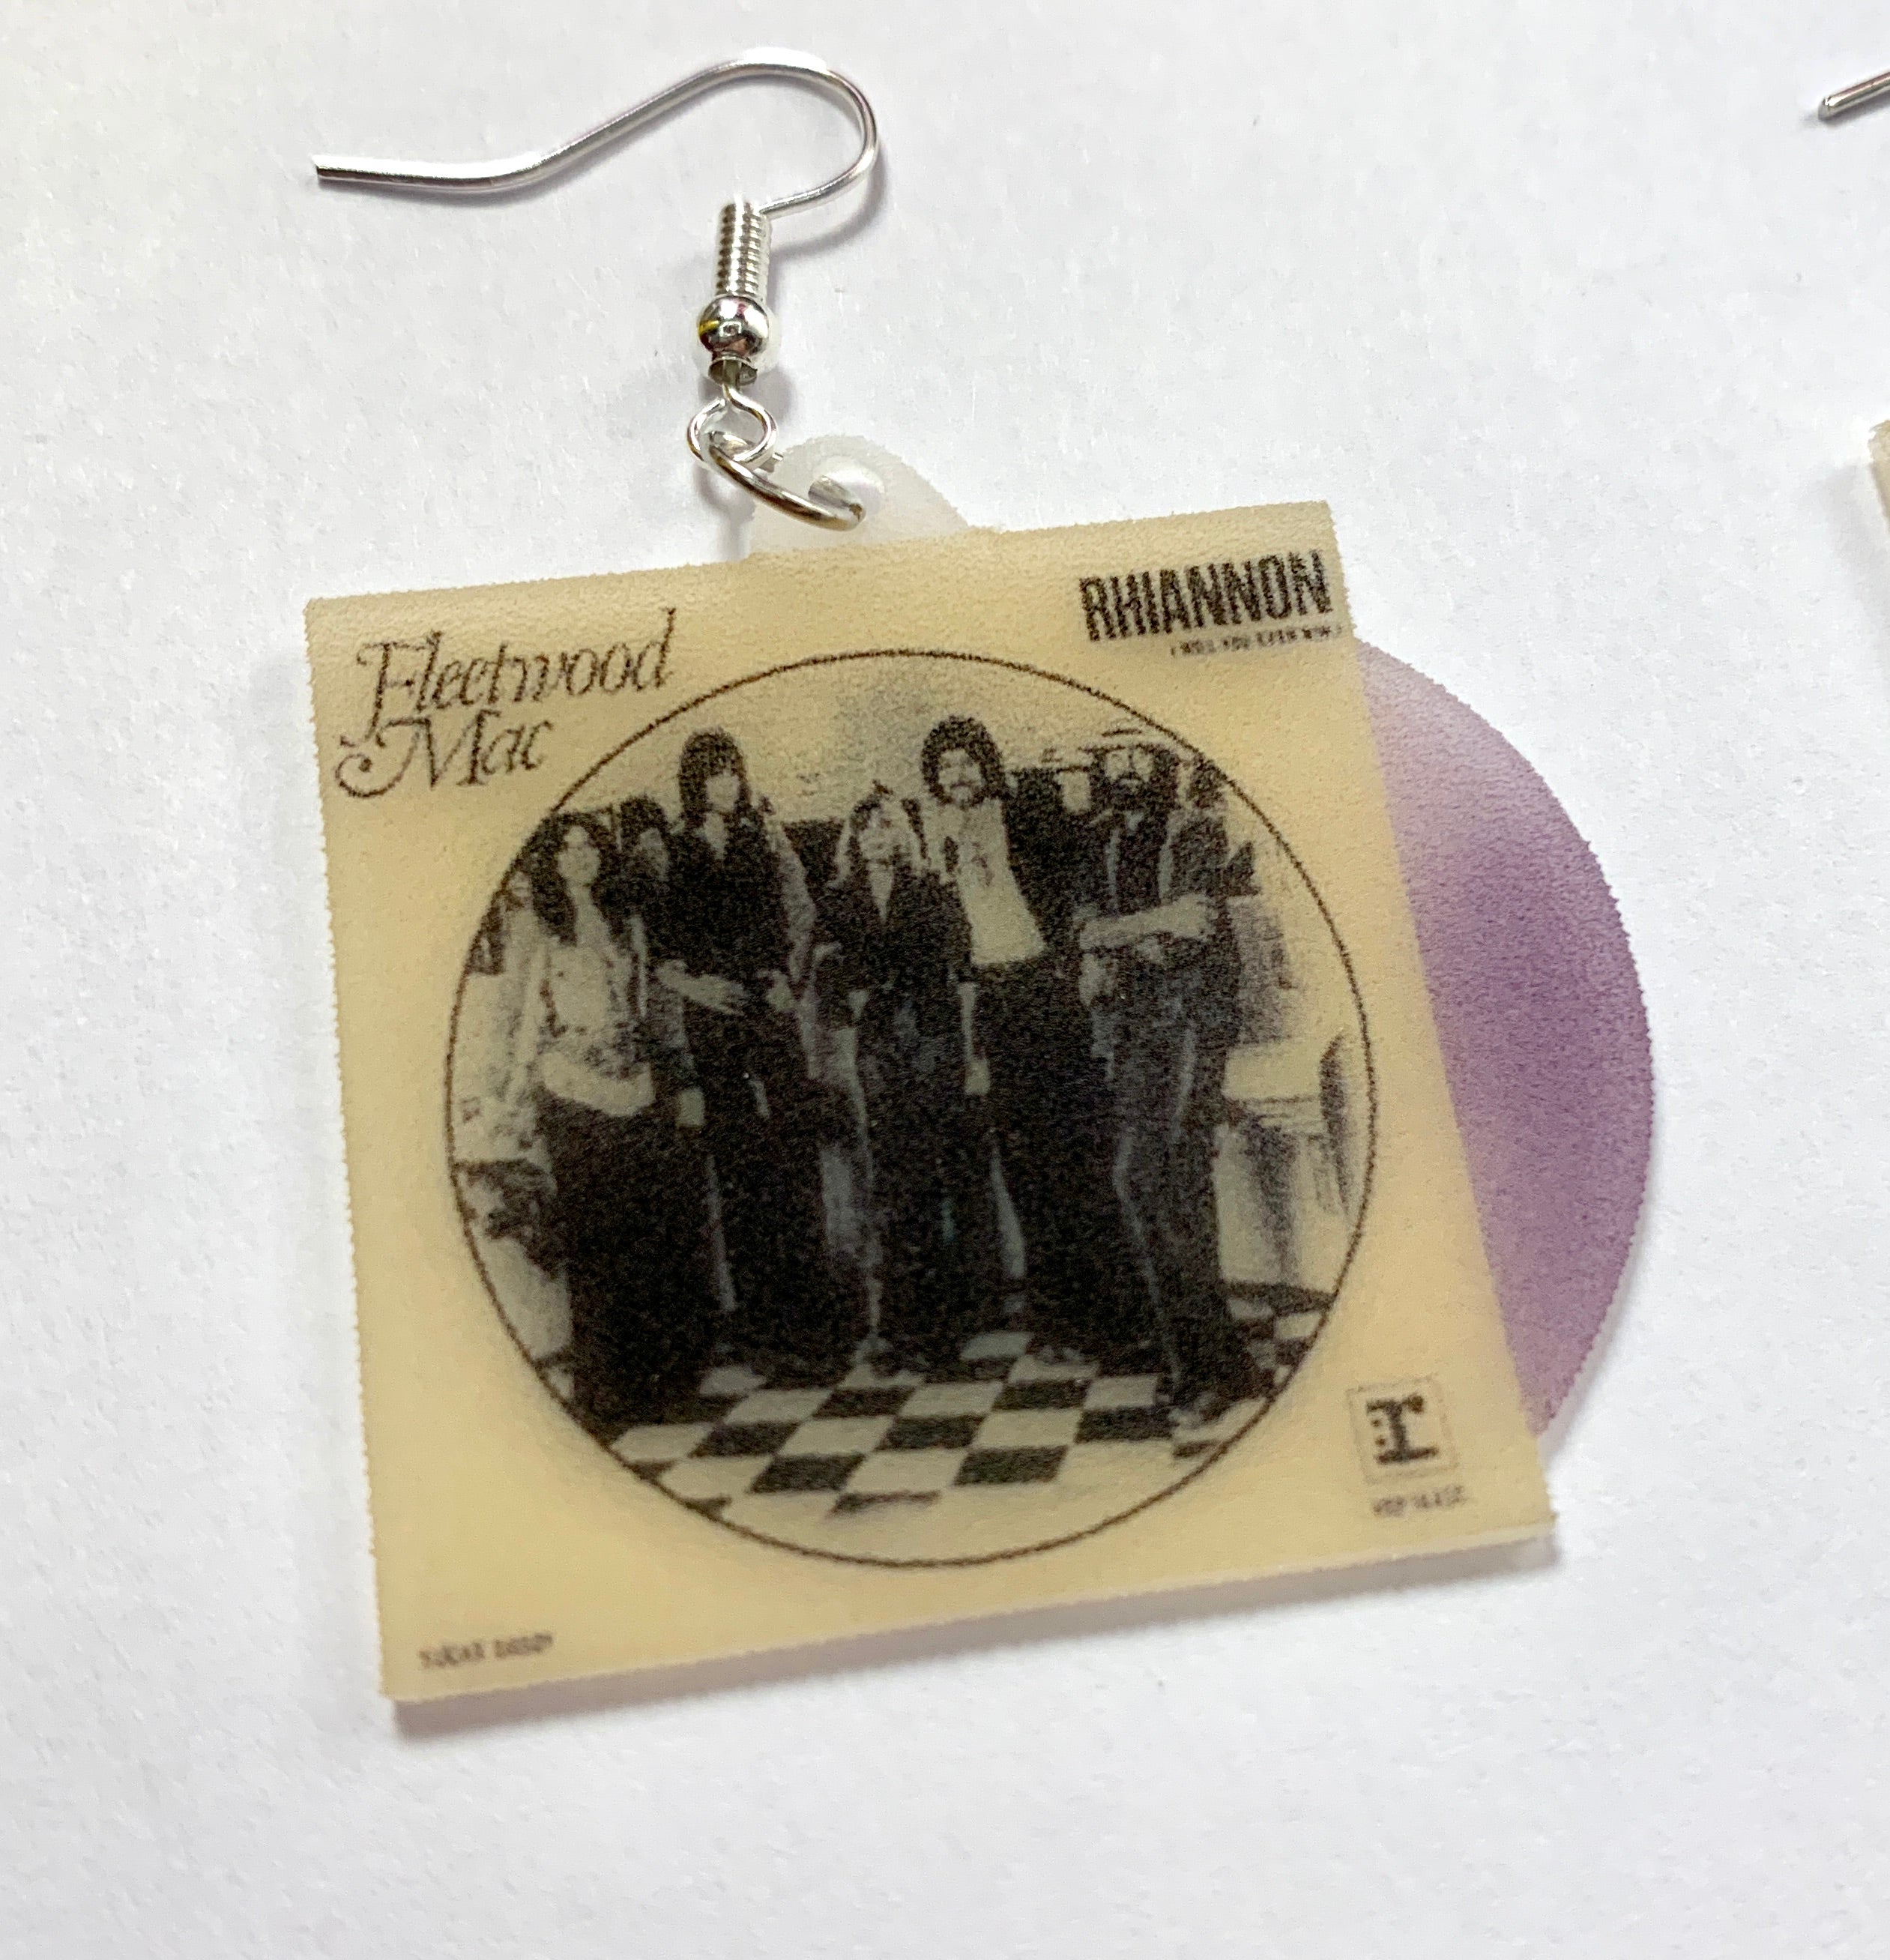 Fleetwood Mac Rhiannon Vinyl Single Handmade Earrings!